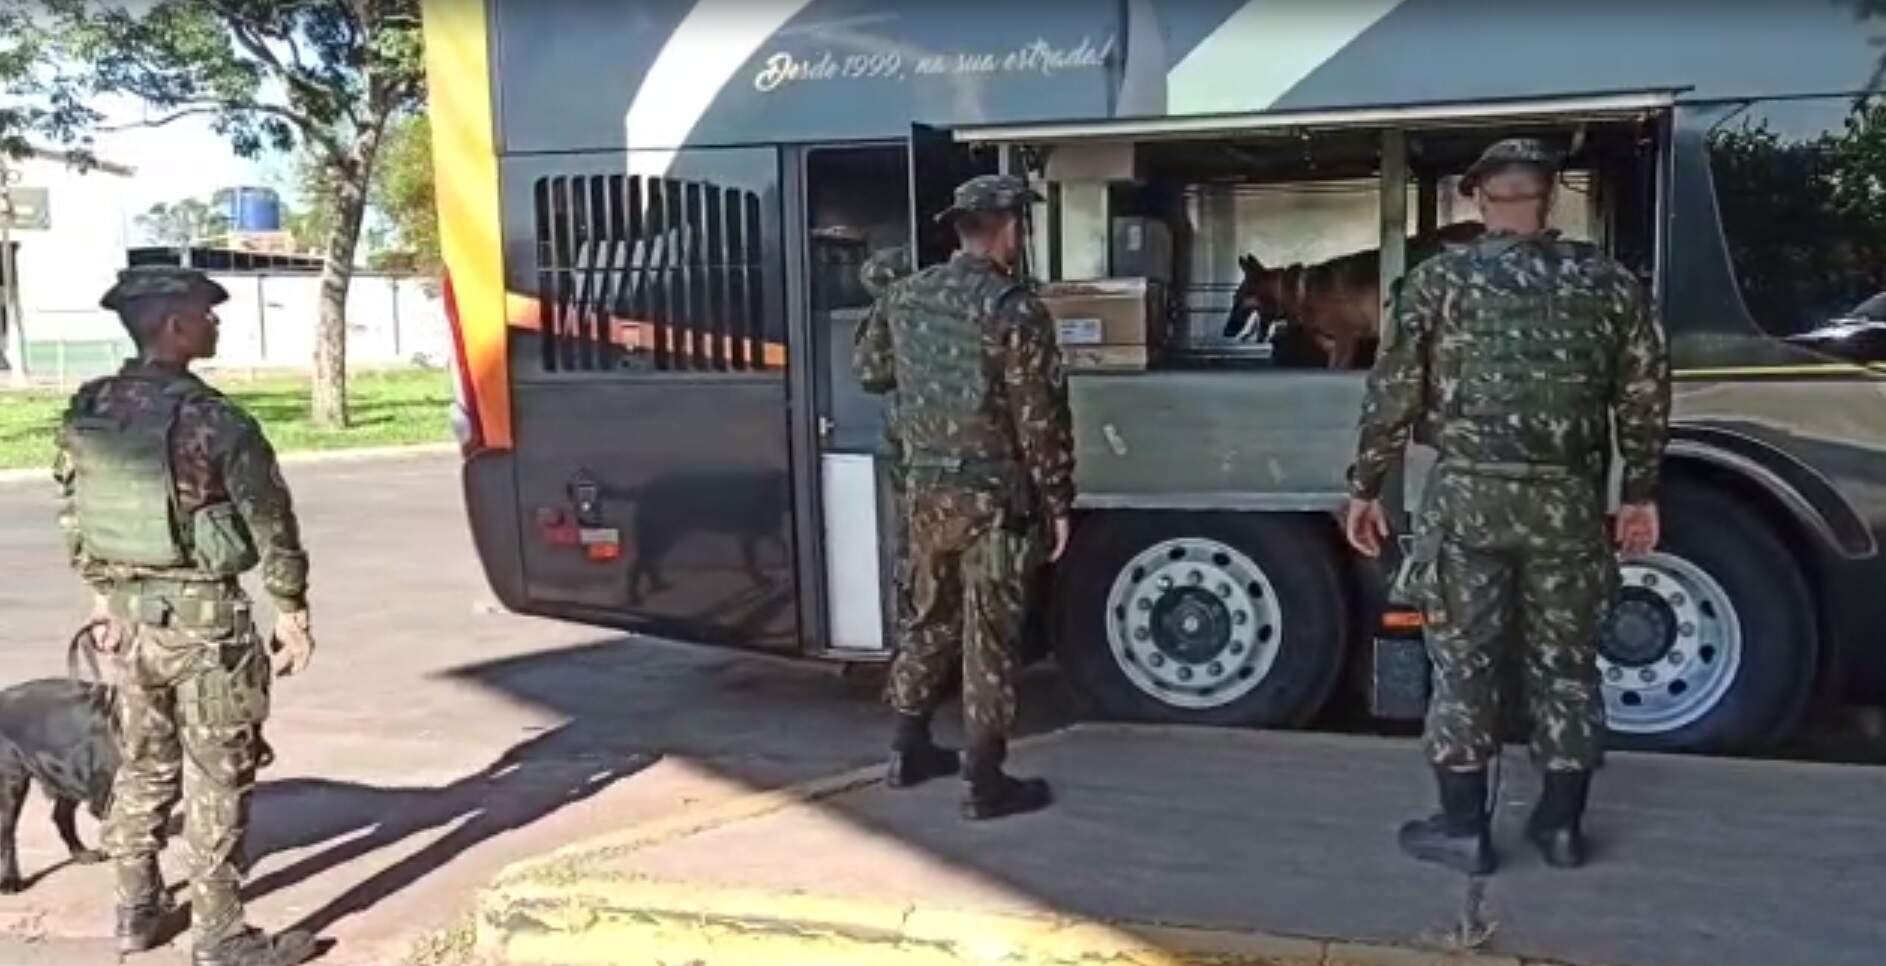 Exército Brasileiro Intensifica Segurança na Fronteira Oeste